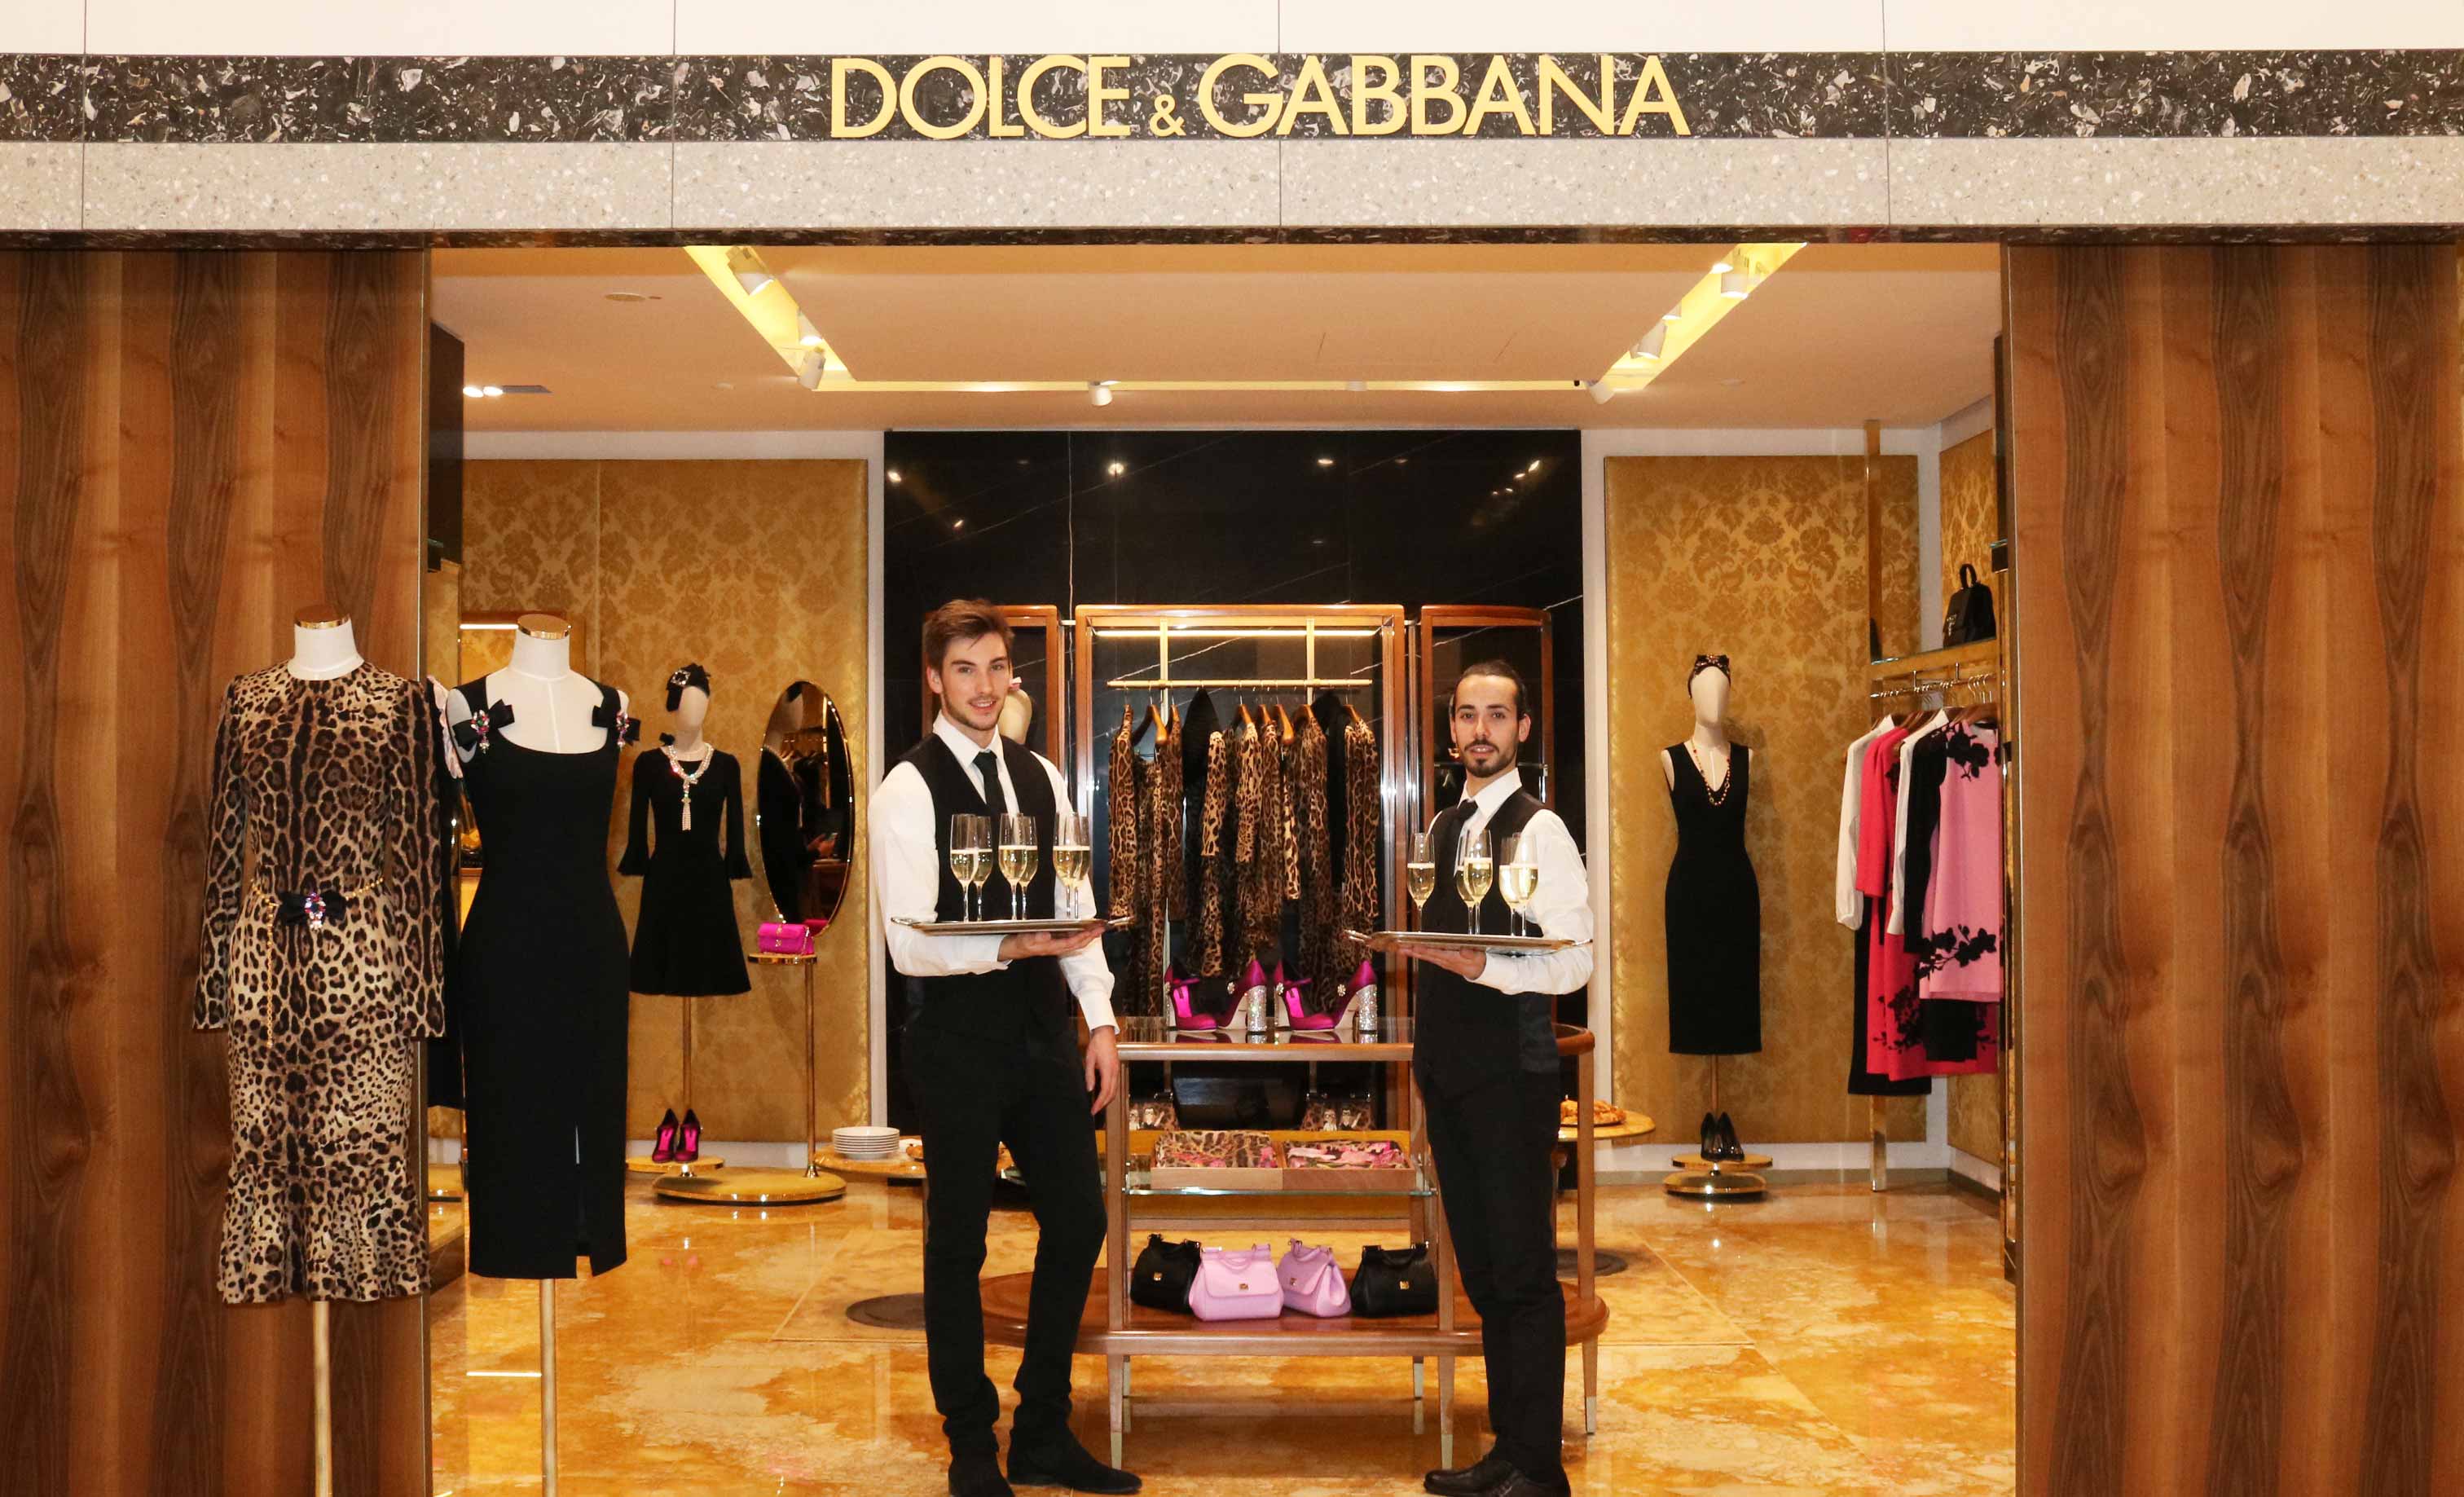 Dolce und Gabbana feiern im KaDeWe mit Champagner, IZOE Service Personal